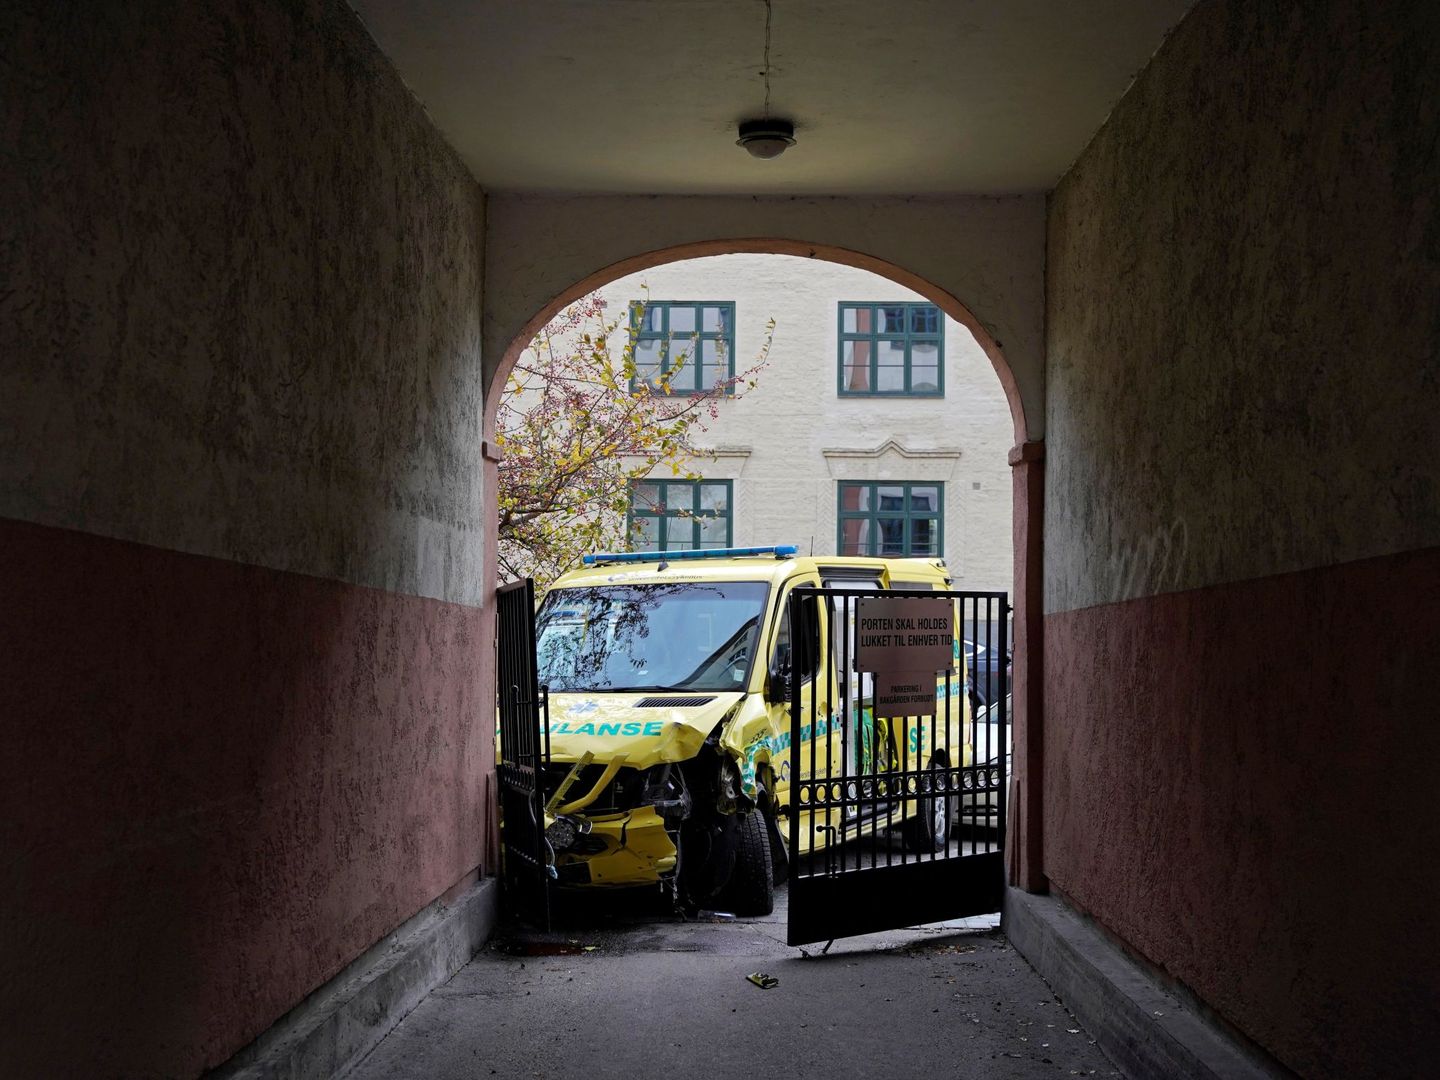 Colisión de la ambulancia robada en Oslo. (Reuters)